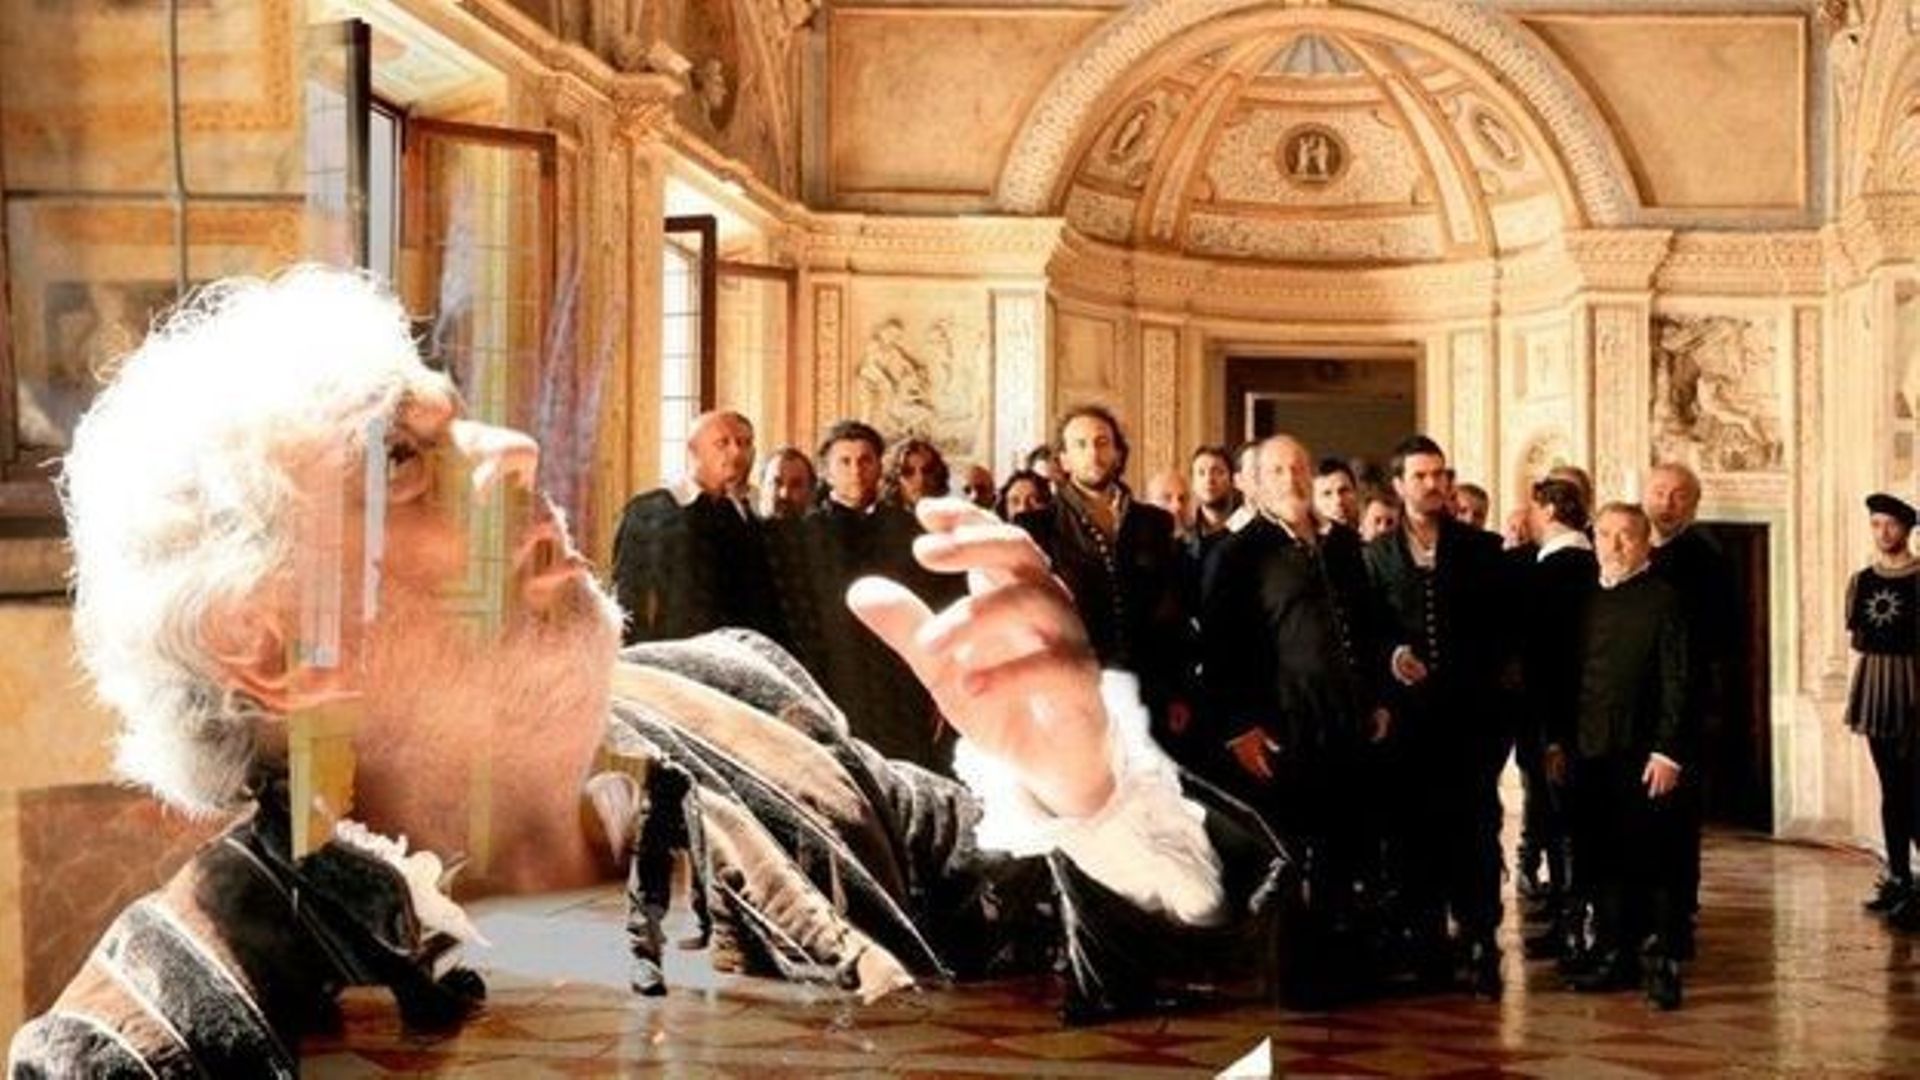 Le classique en prime | "Rigoletto" de Verdi à Mantoue